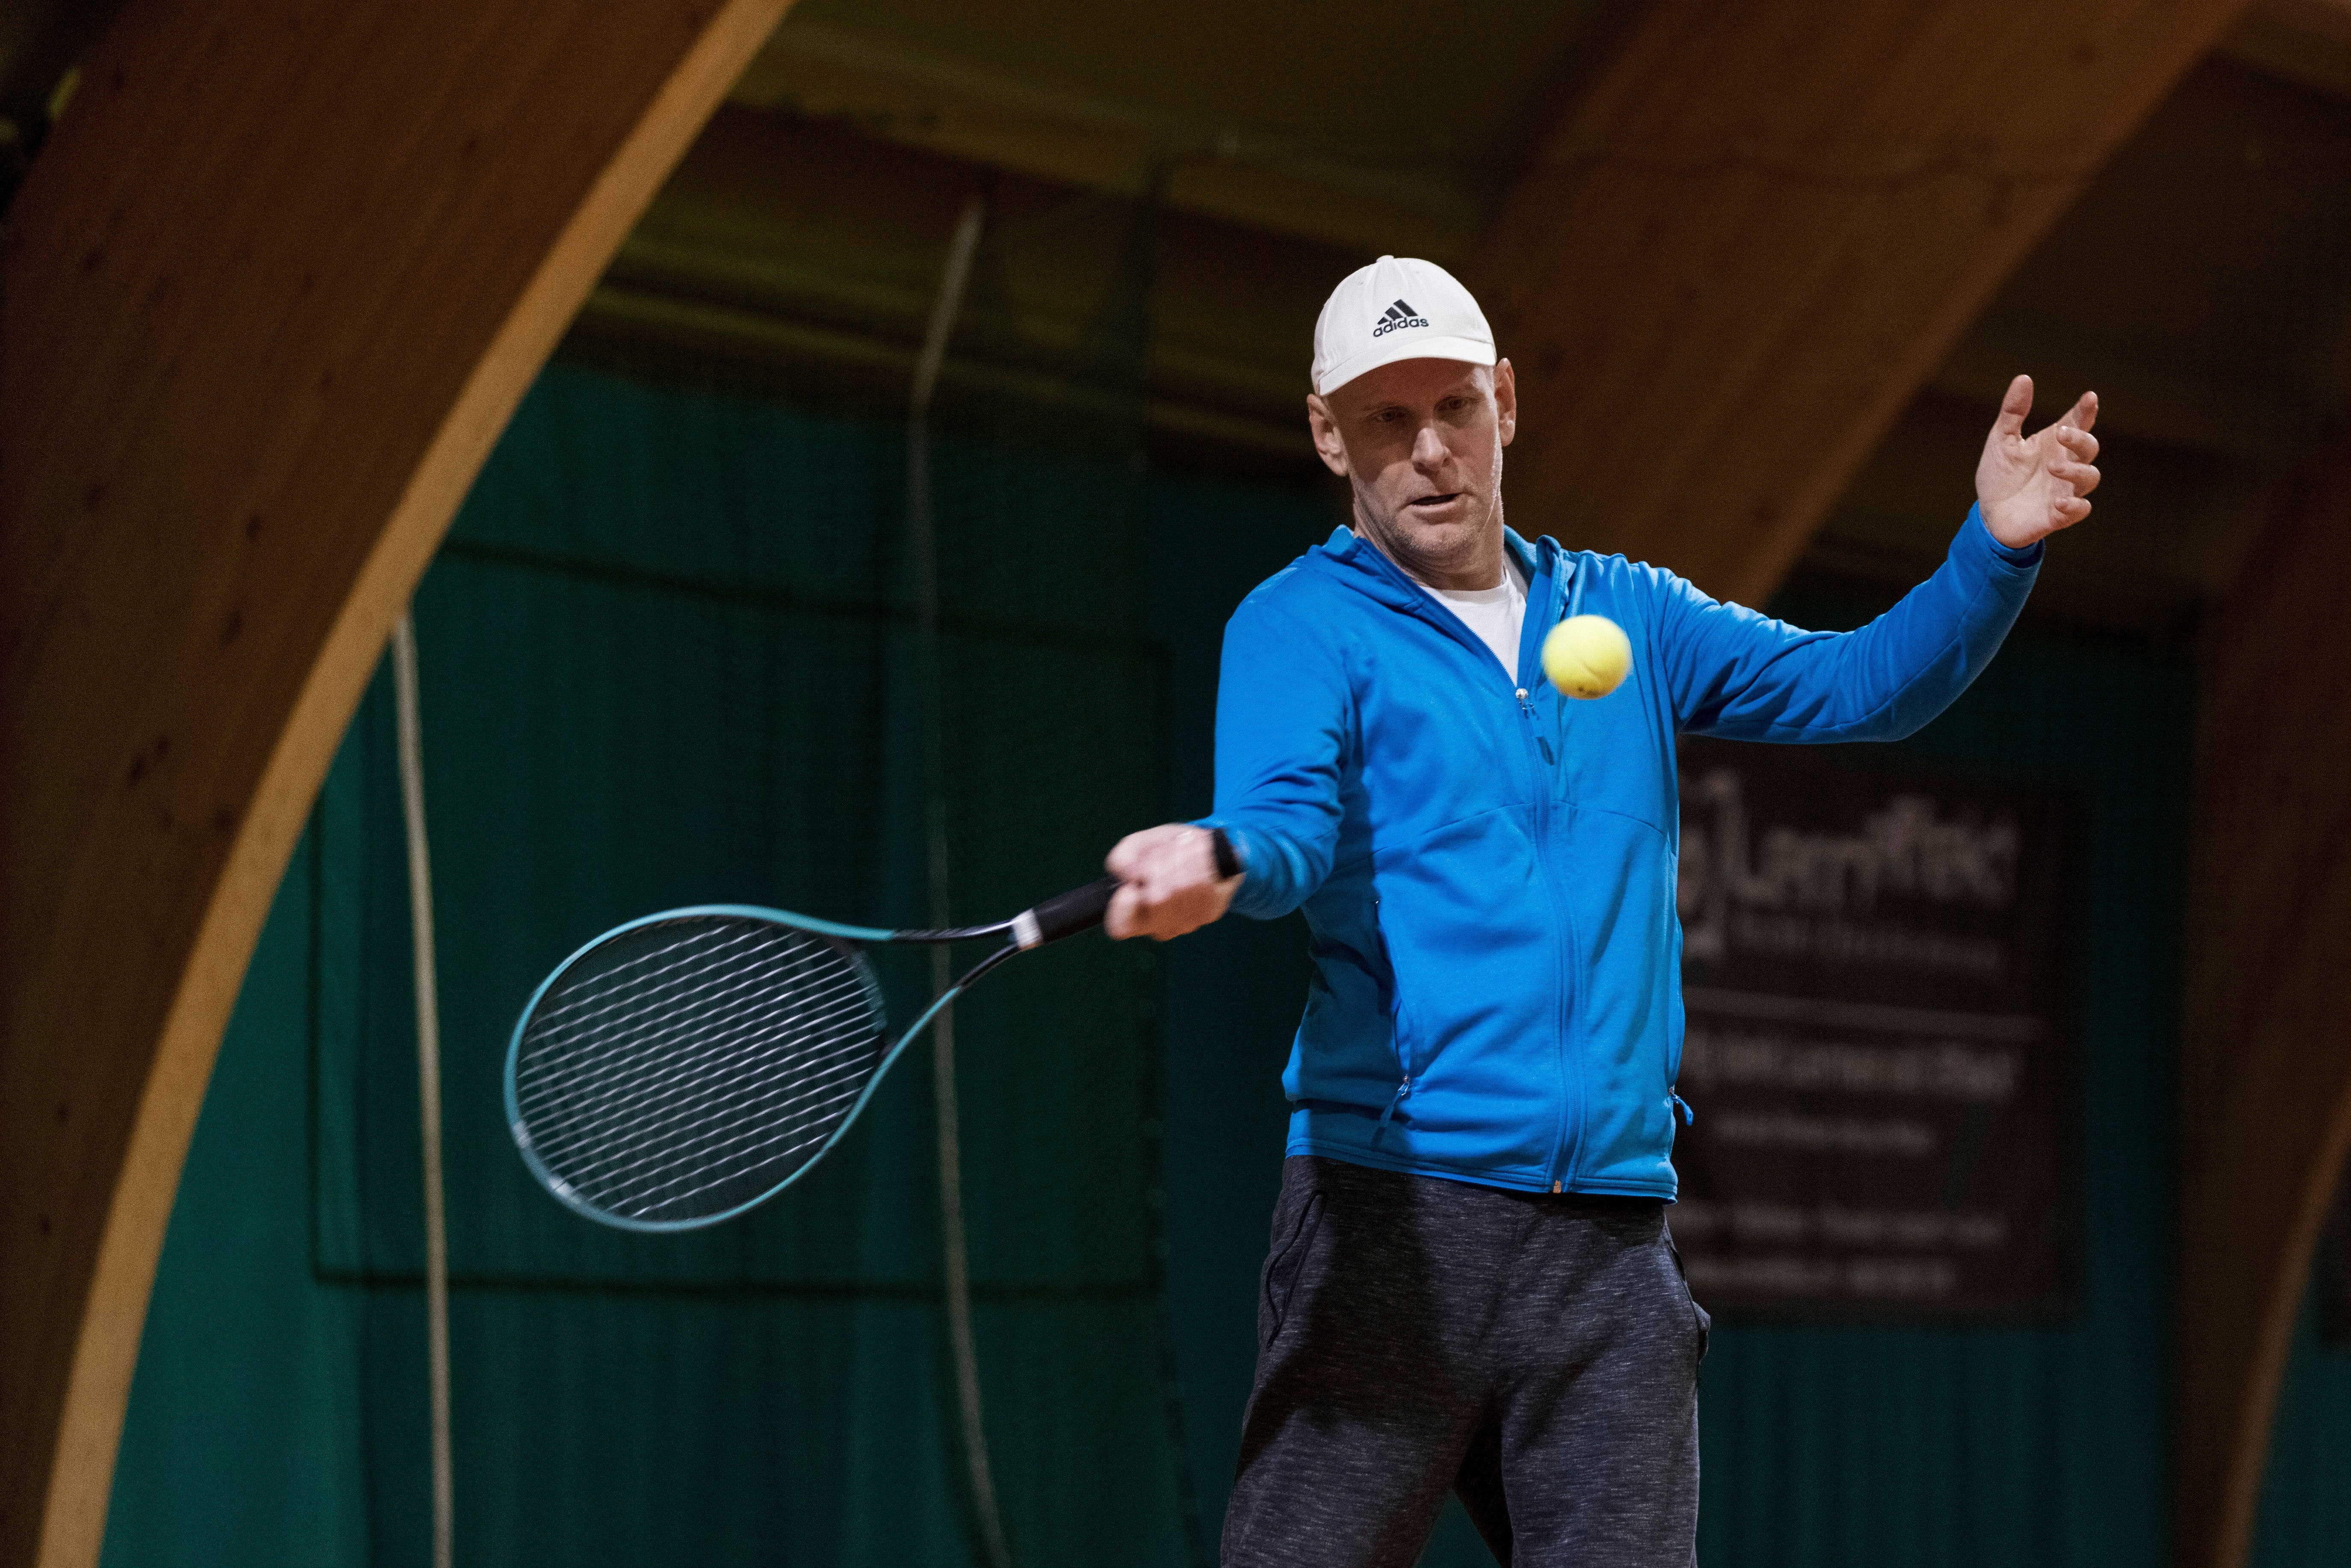 Beim Training im Tenniscenter Urdorf zeigt er, was er draufhat. Der gebürtige Australier arbeitet auch als Tennistrainer.